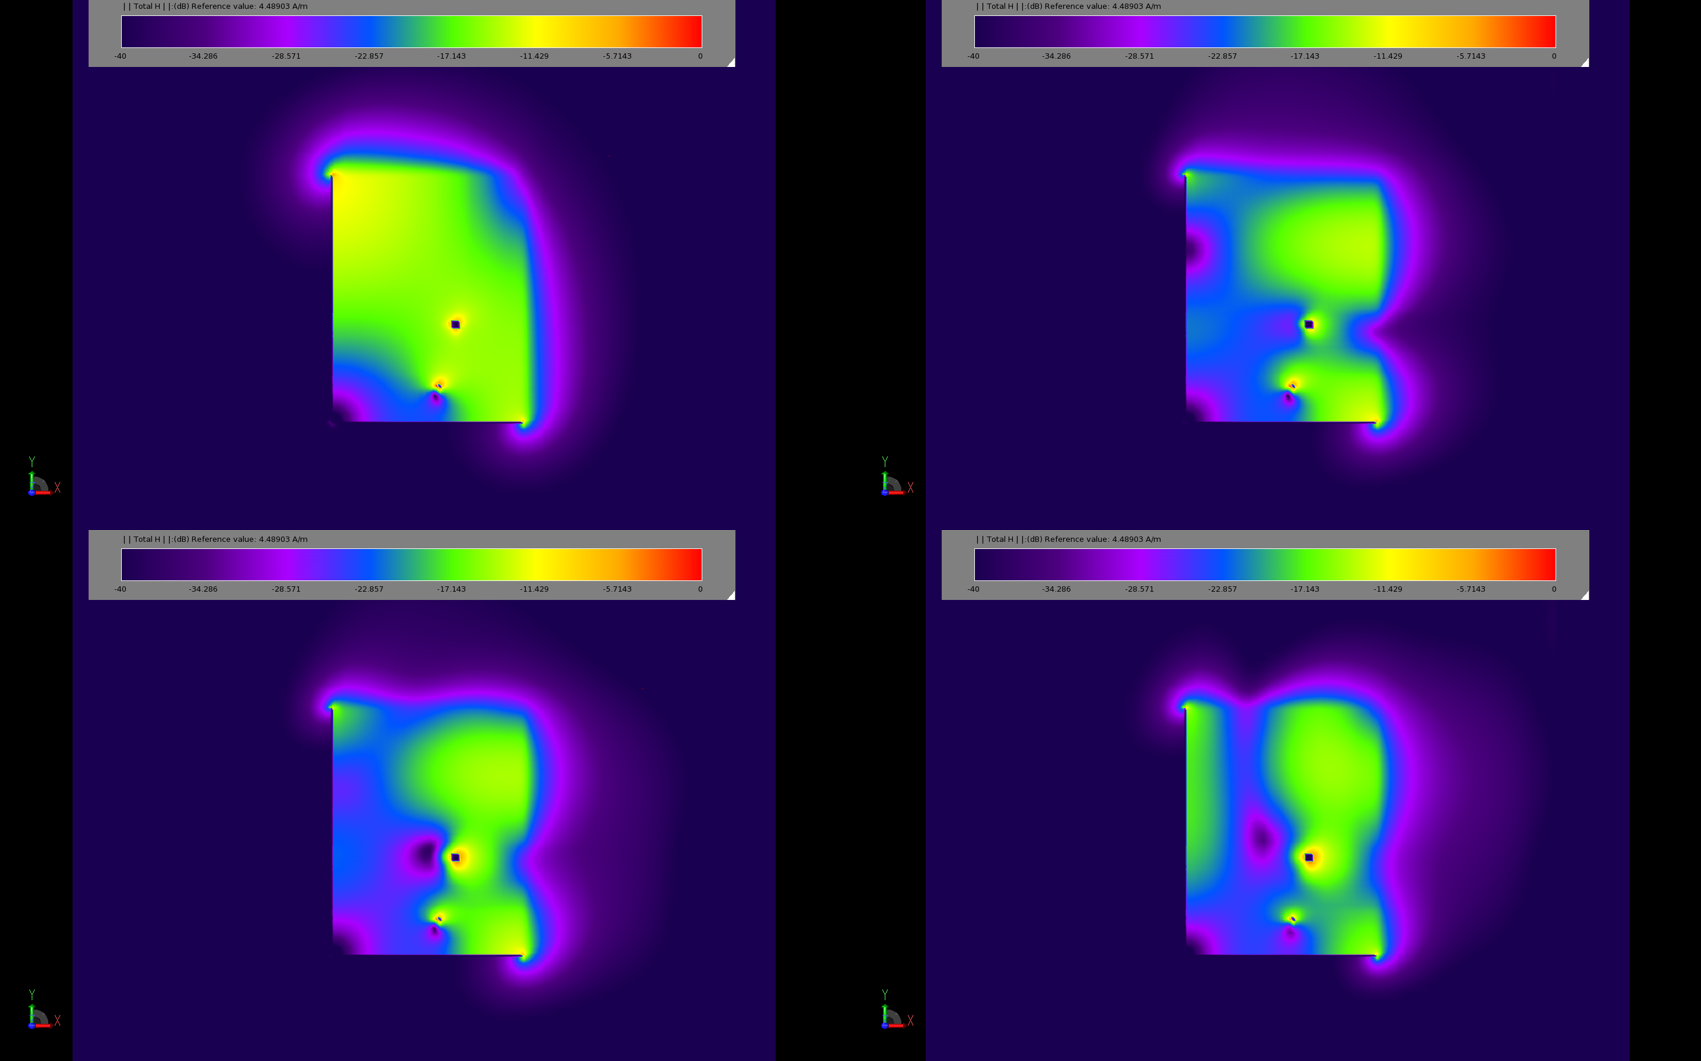 图 3：稳态磁场分布图显示了贴片的不同工作模式。左上图 (3a) 频率为 2.45 GHz，右上图 (3b) 频率为 5.2 GHz。底部两幅图（3c 和 3d）显示了 5.... 时的响应。